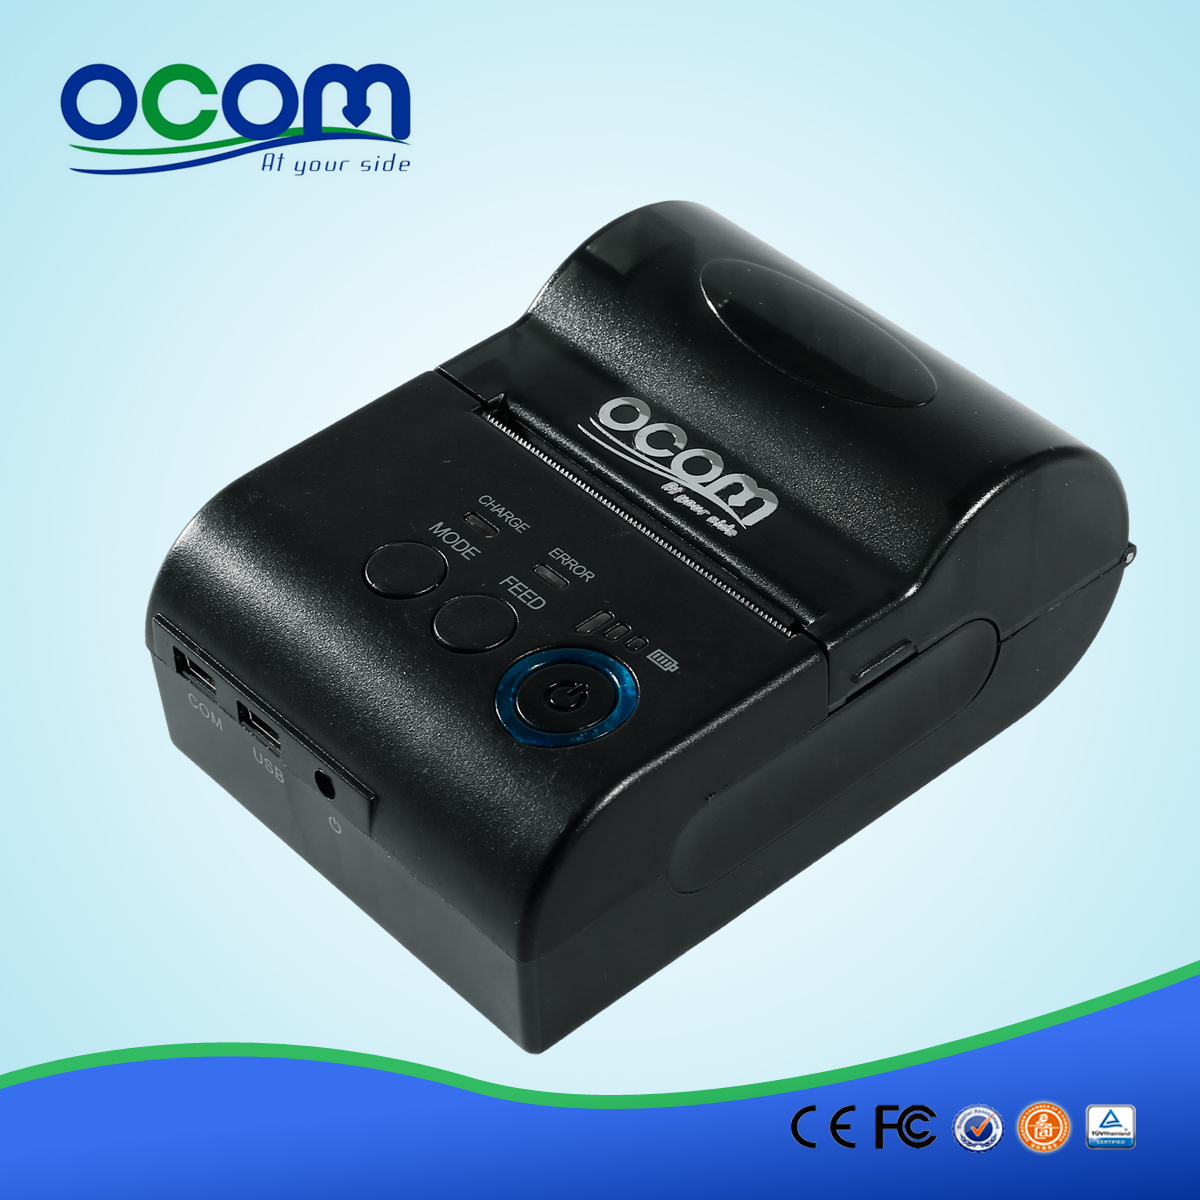 OCPP-M03: الطابعة نقاط البيع الحرارية الرخيصة، طابعة حرارية نقاط البيع الطابعة الروبوت